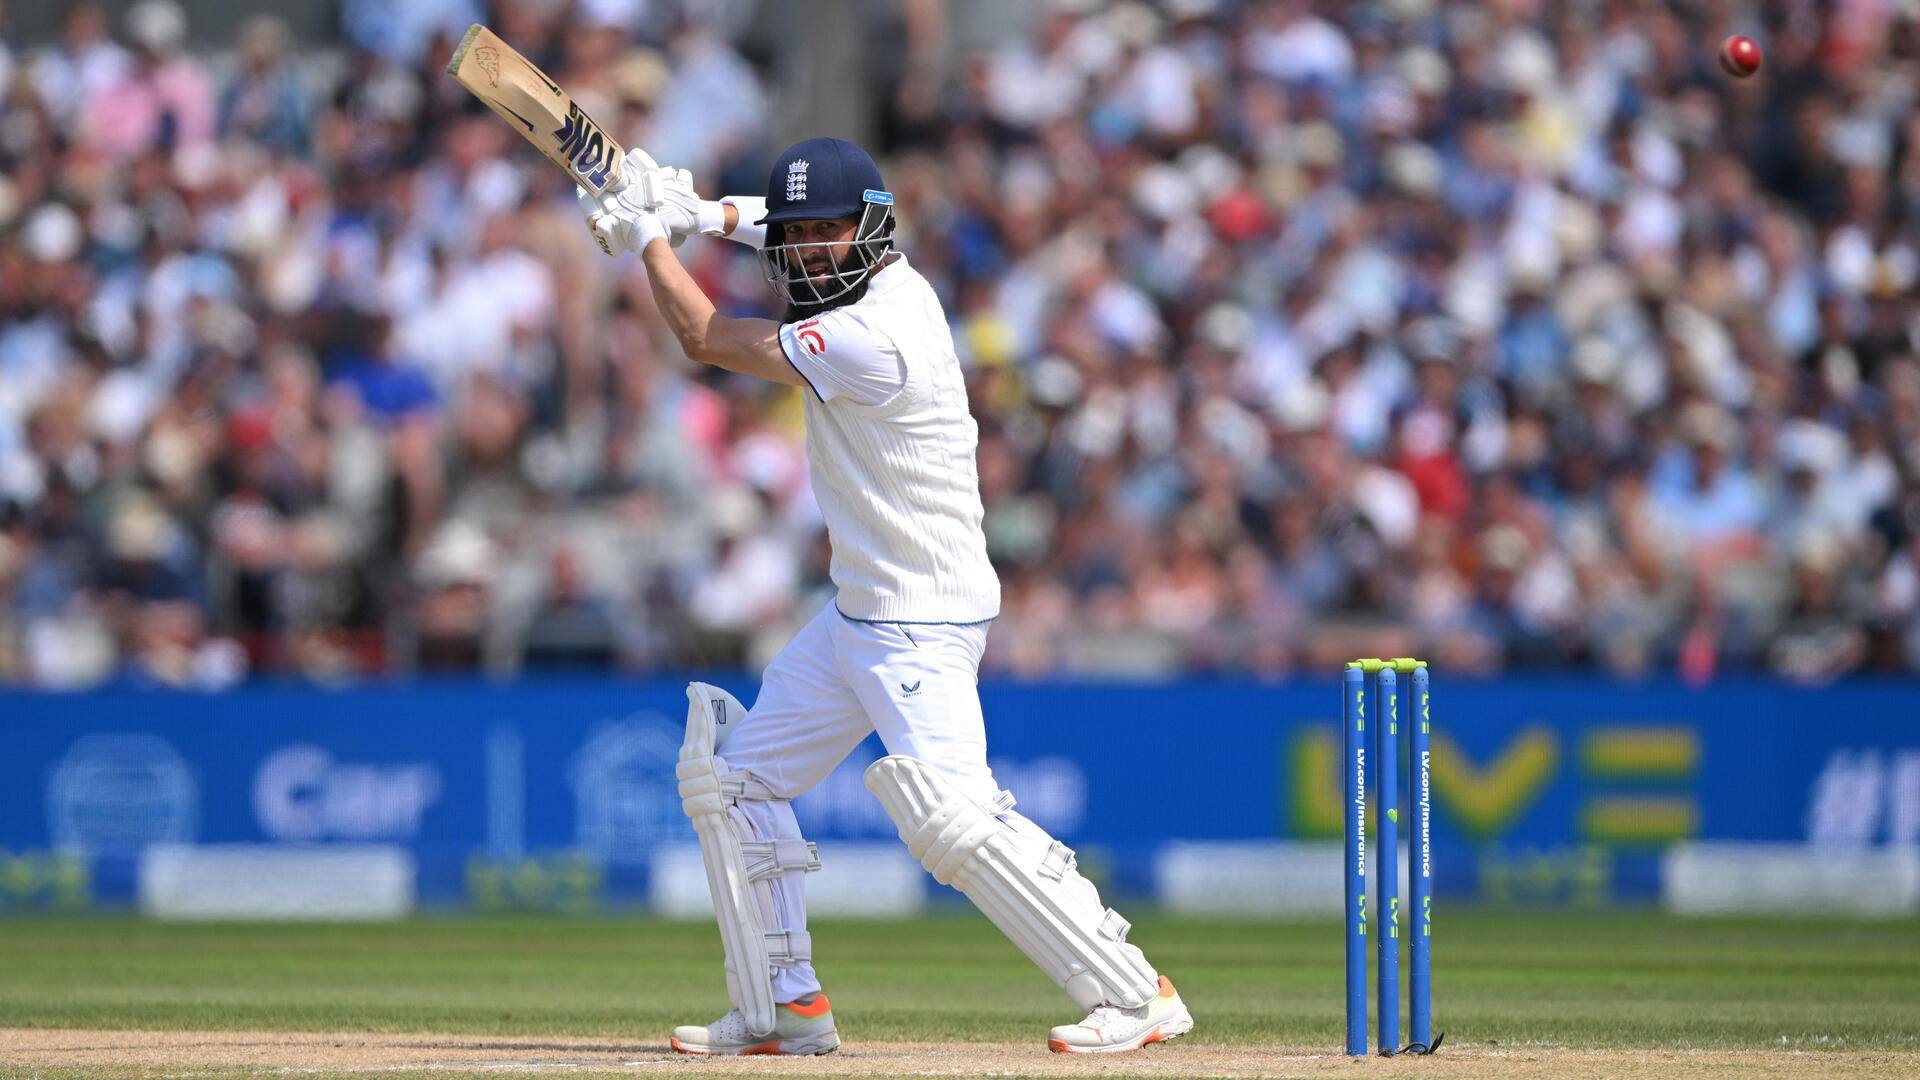 मोईन अली टेस्ट में 3,000 रन बनाने और 200 विकेट लेने वाले चौथे इंग्लिश खिलाड़ी बने 